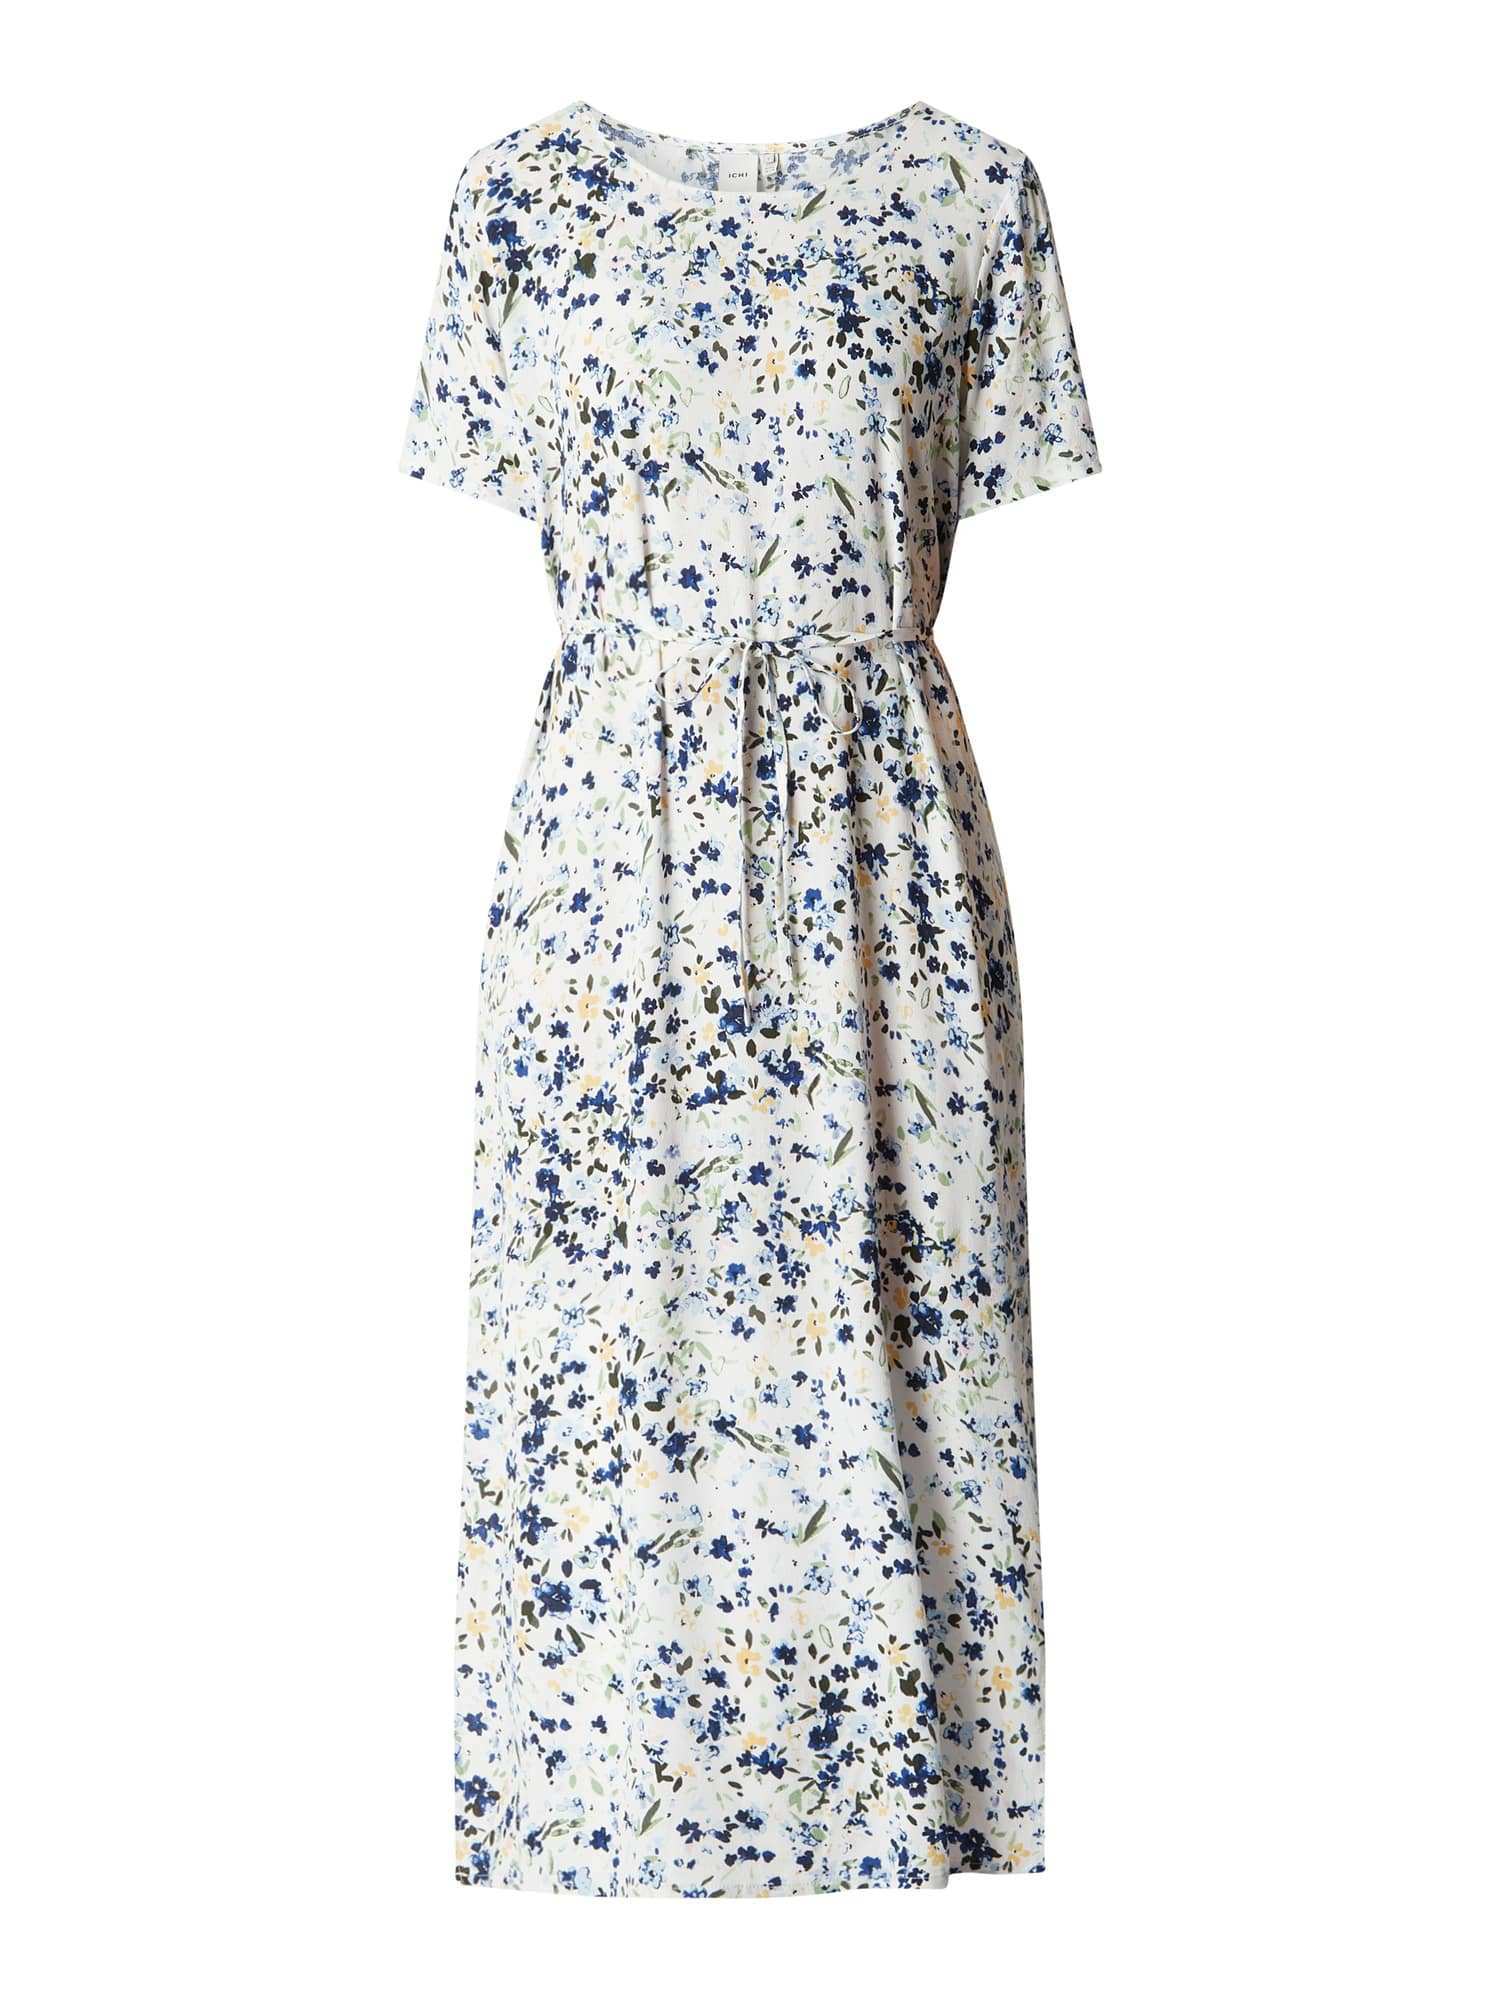 Ichi Kleid Mit Floralem Muster Modell Cannap In Weiss Online Kaufen 1111371 P C Online Shop